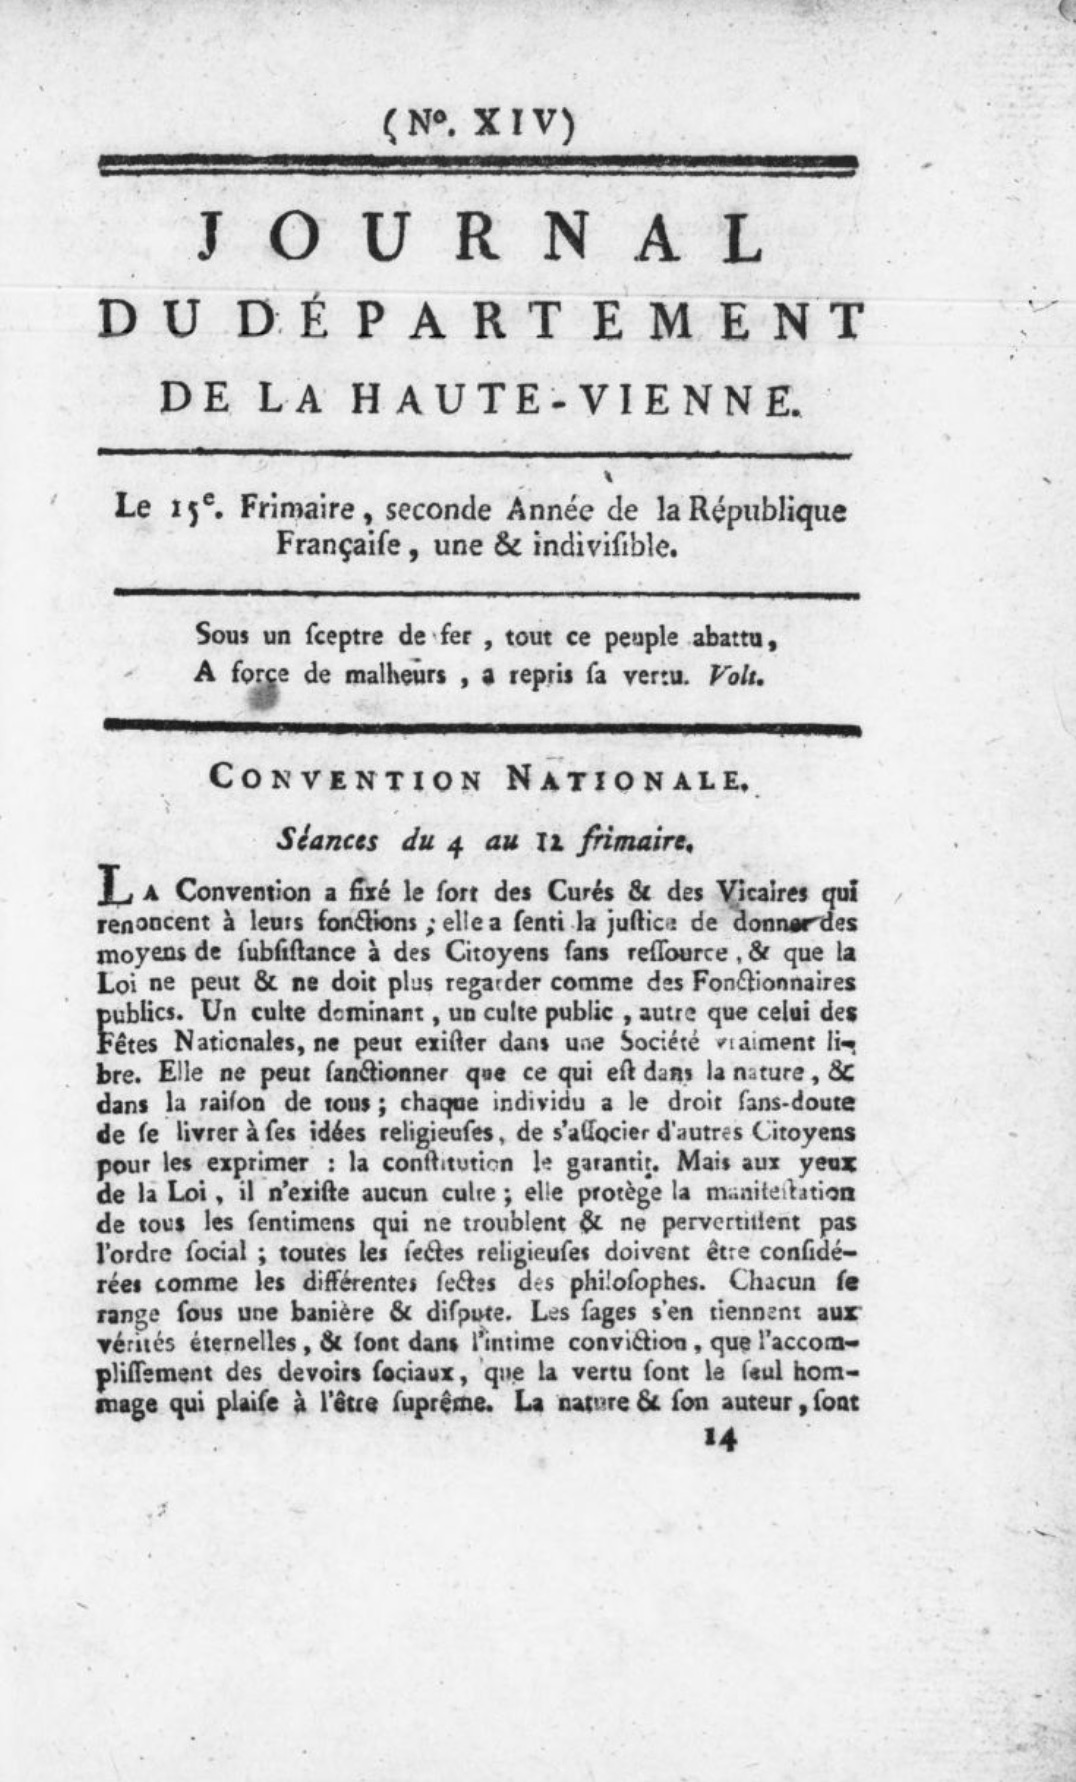 Journal du département de la Haute-Vienne (1793-1794)